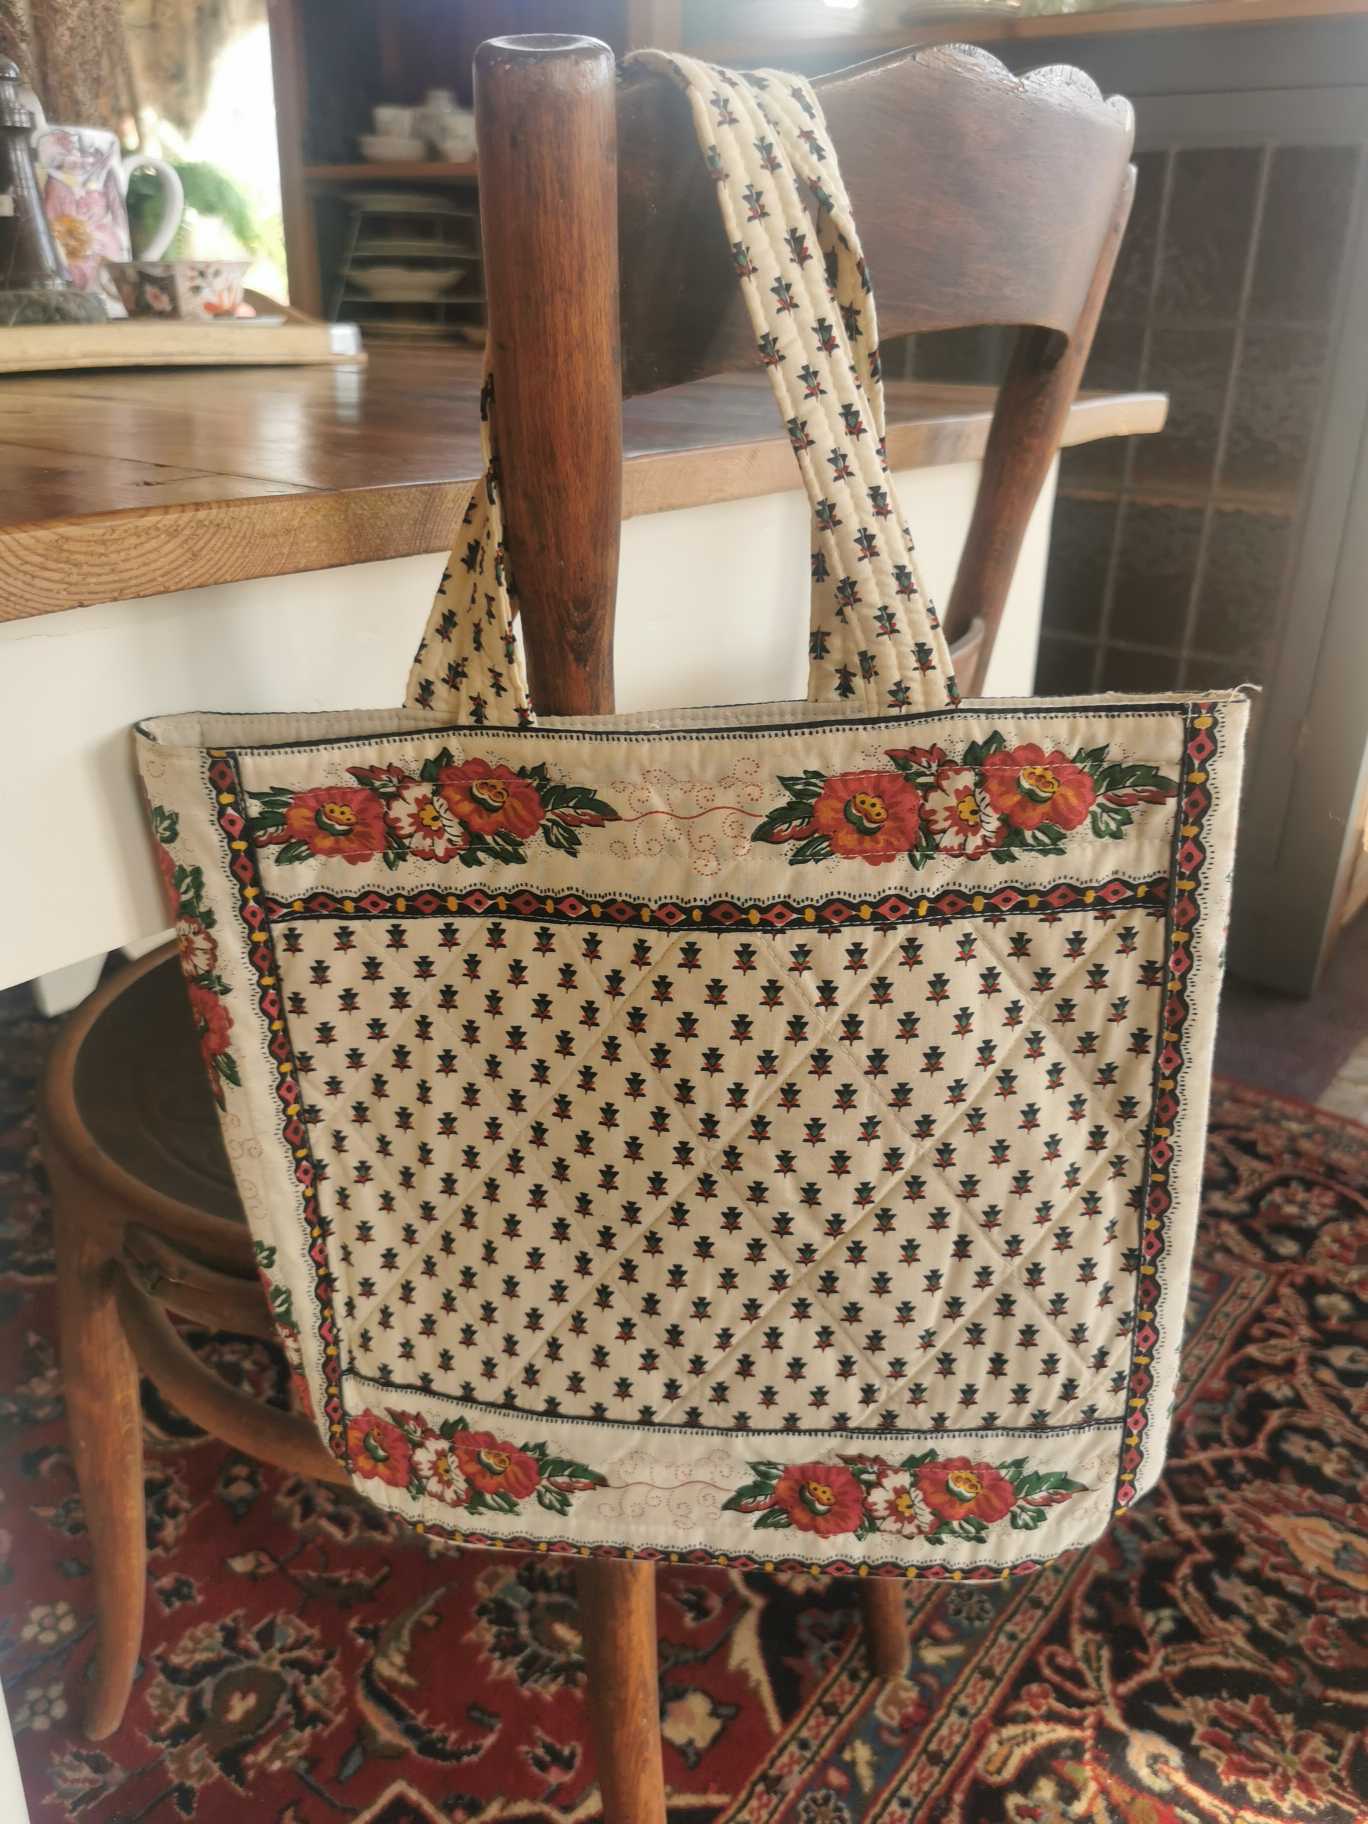 Vintage quilted handbag